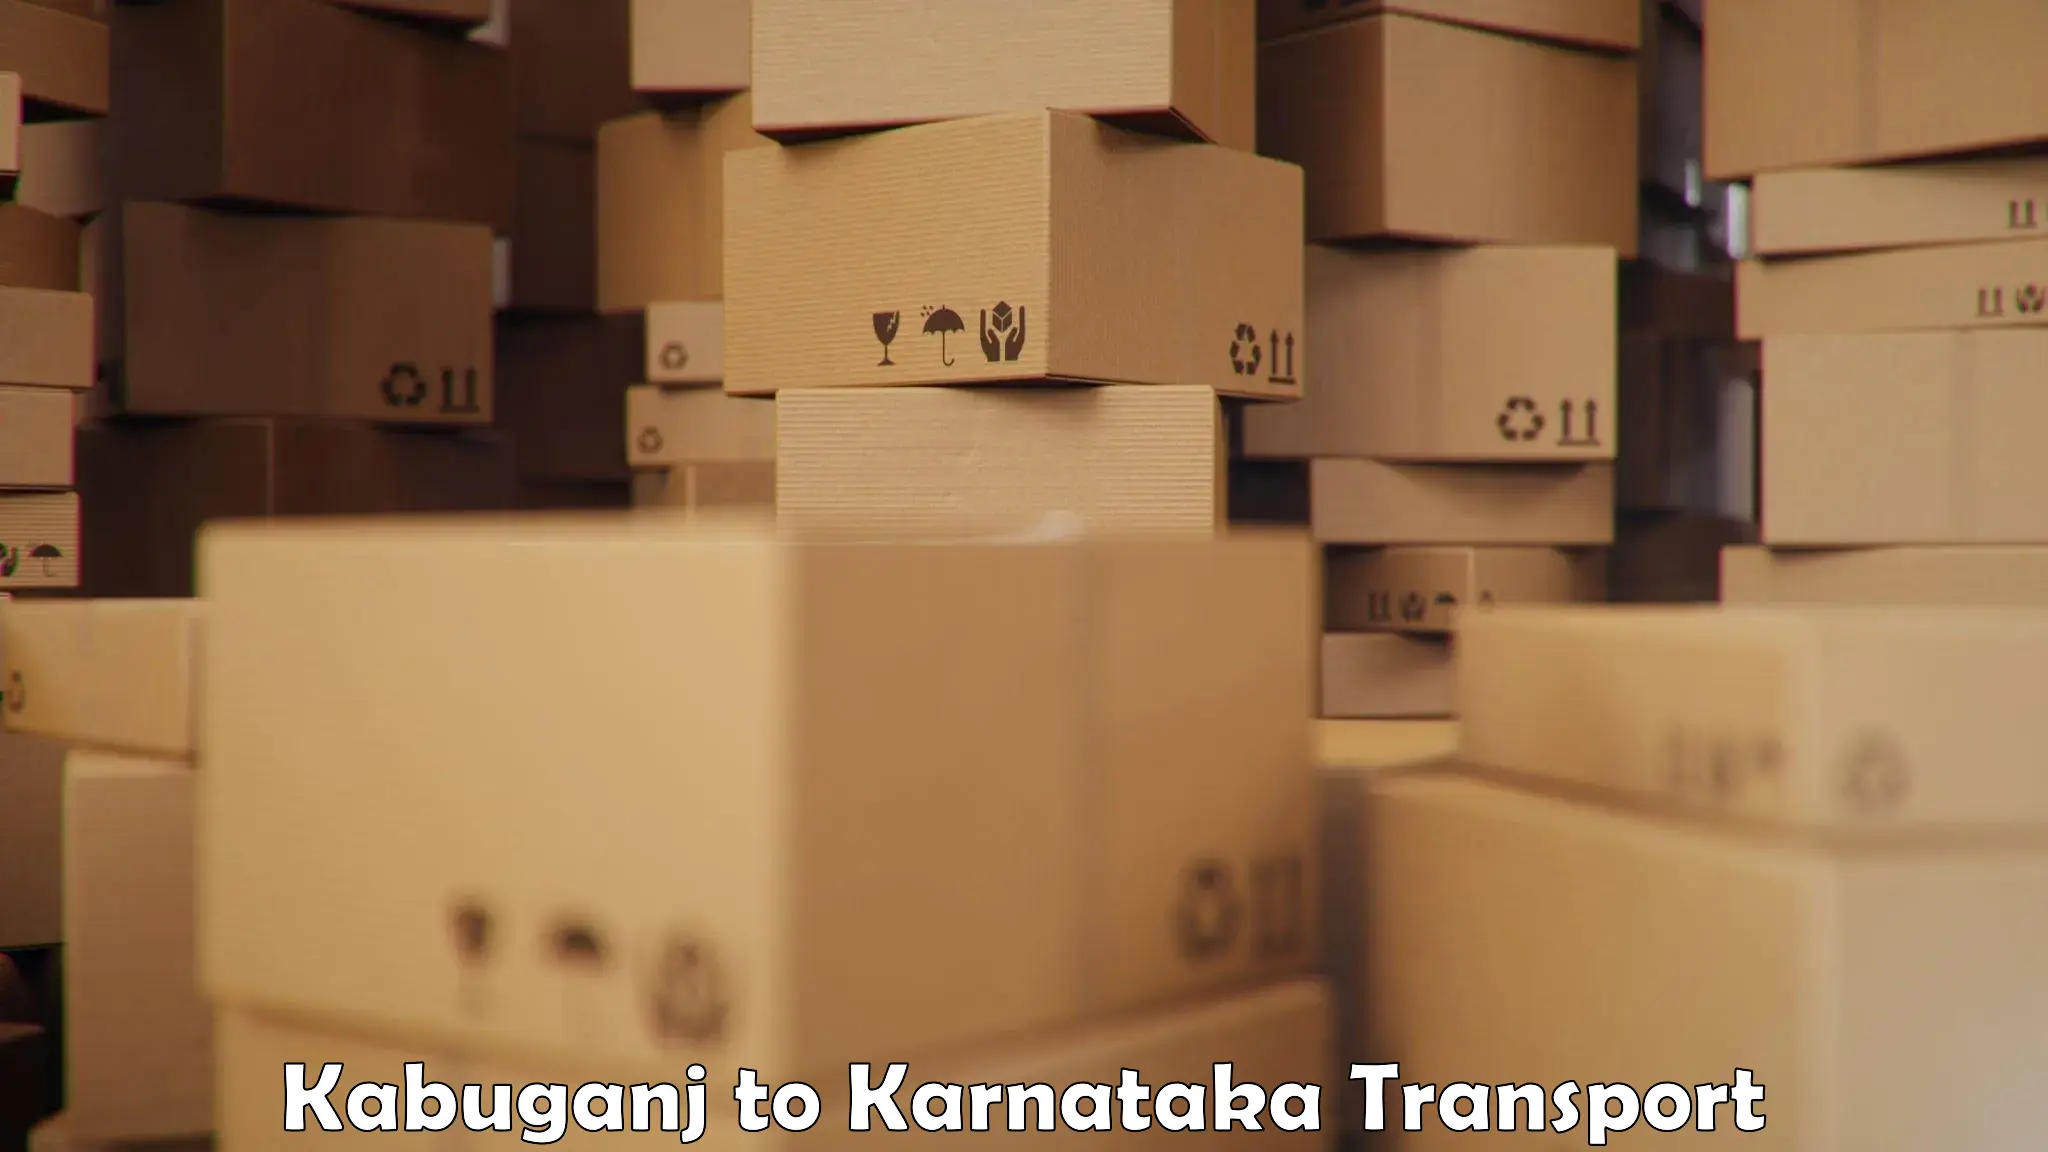 Furniture transport service Kabuganj to Yelburga